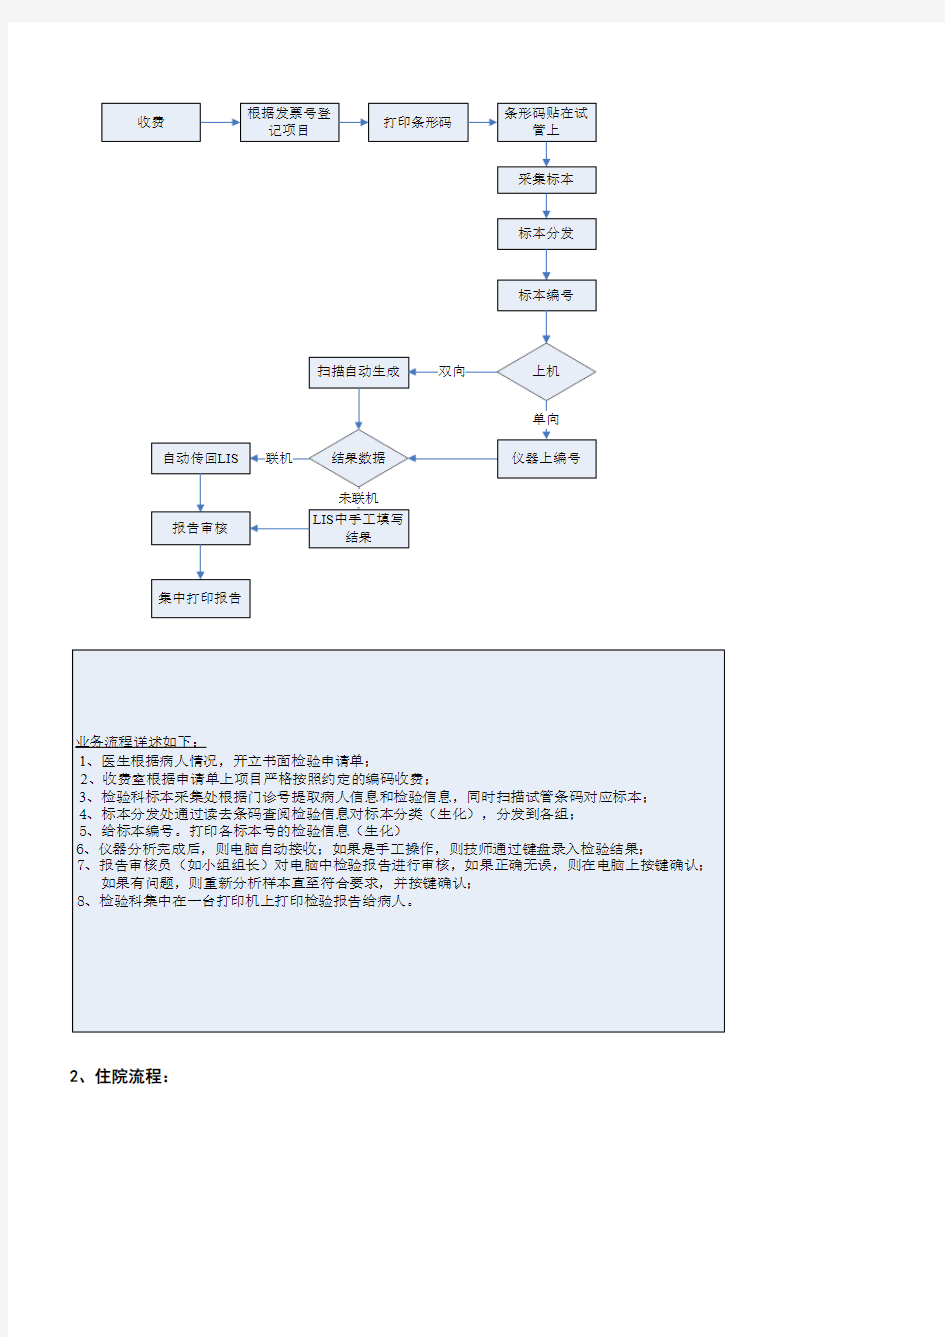 中联LIS系统操作手册